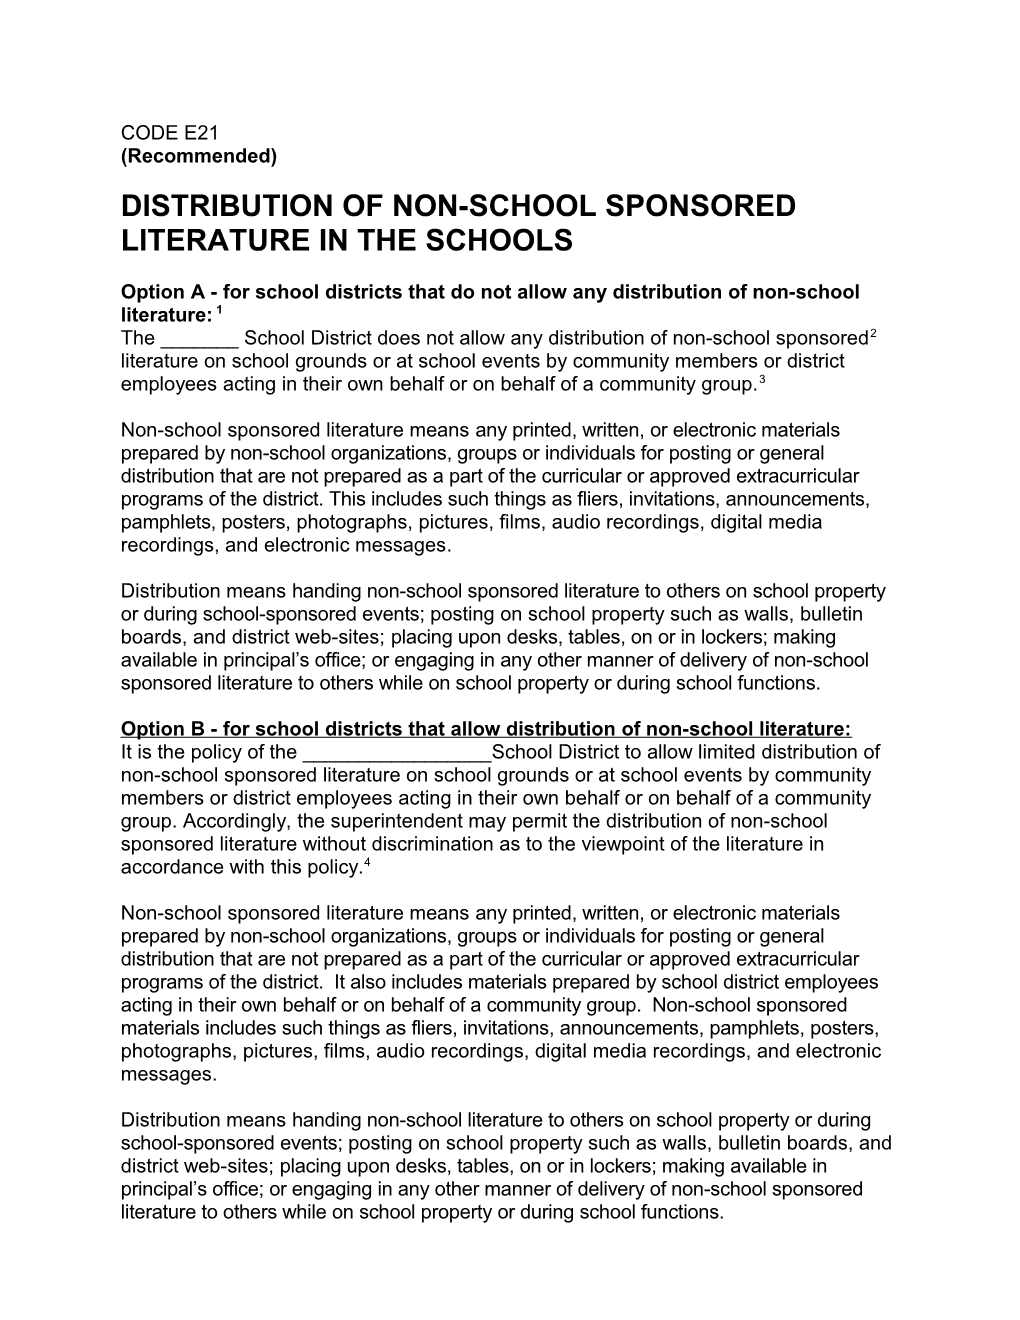 Distribution of Non-School Sponsored Literature in the Schools